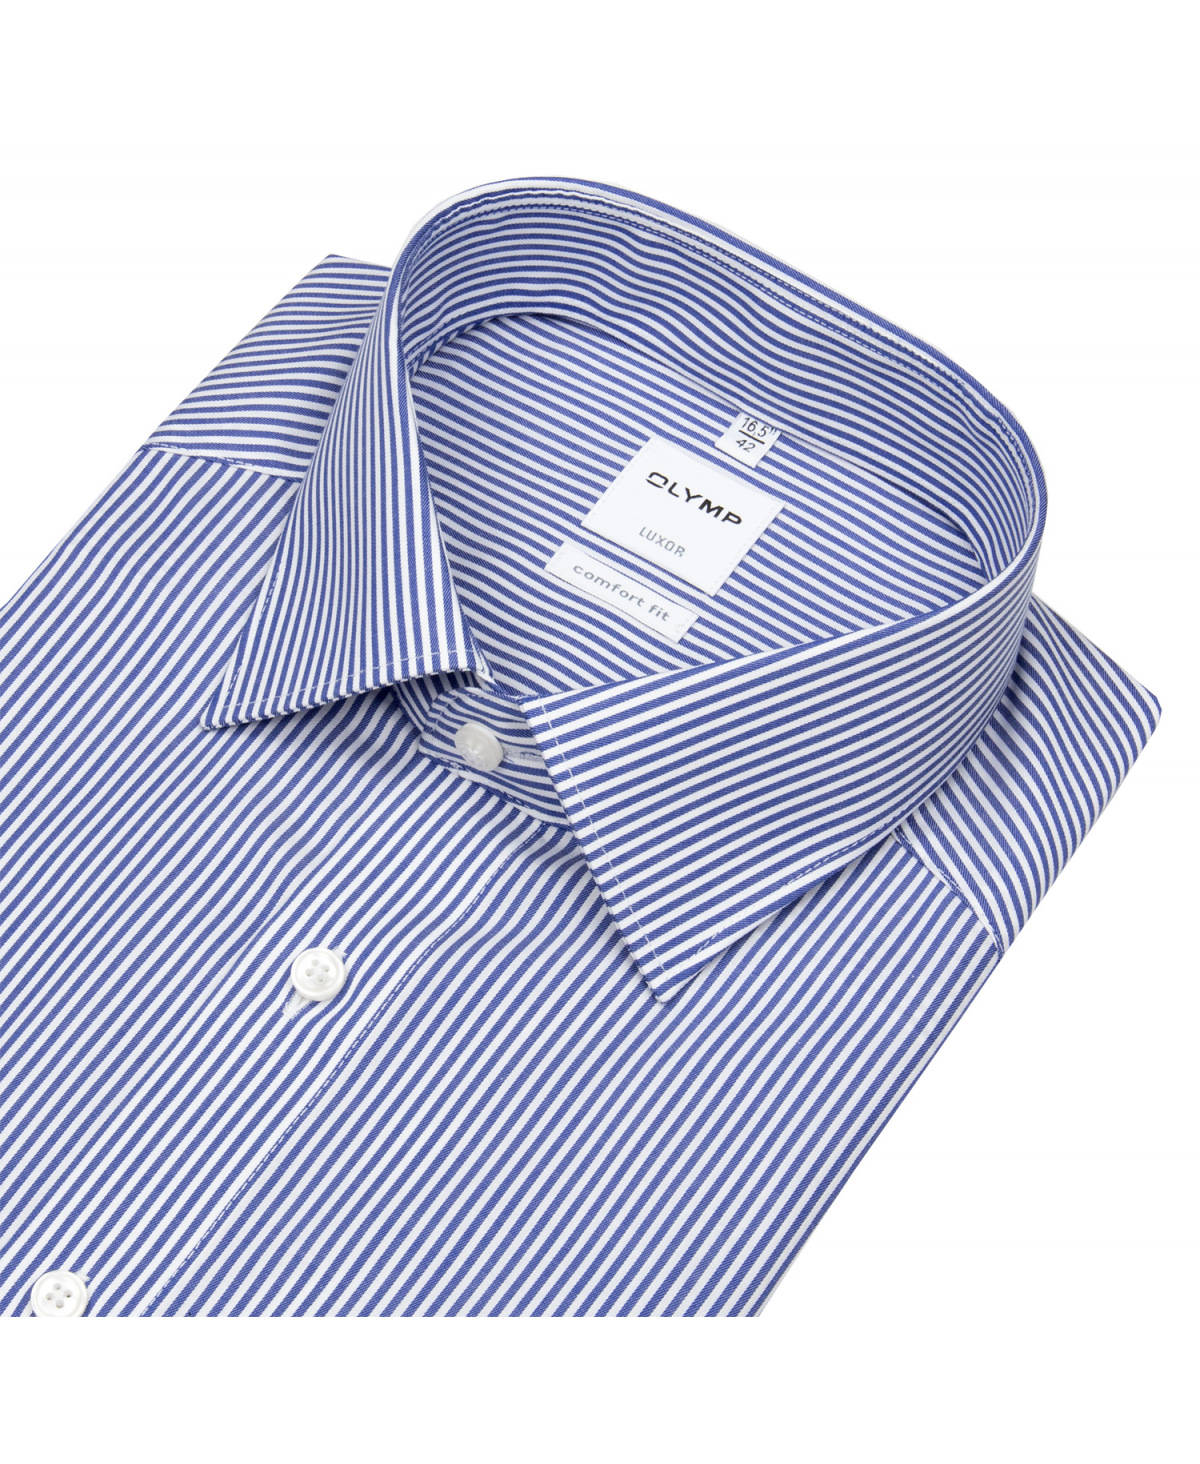 - - Streifen Hemd Twill Fit OLYMP Comfort - Luxor weiß / - blau